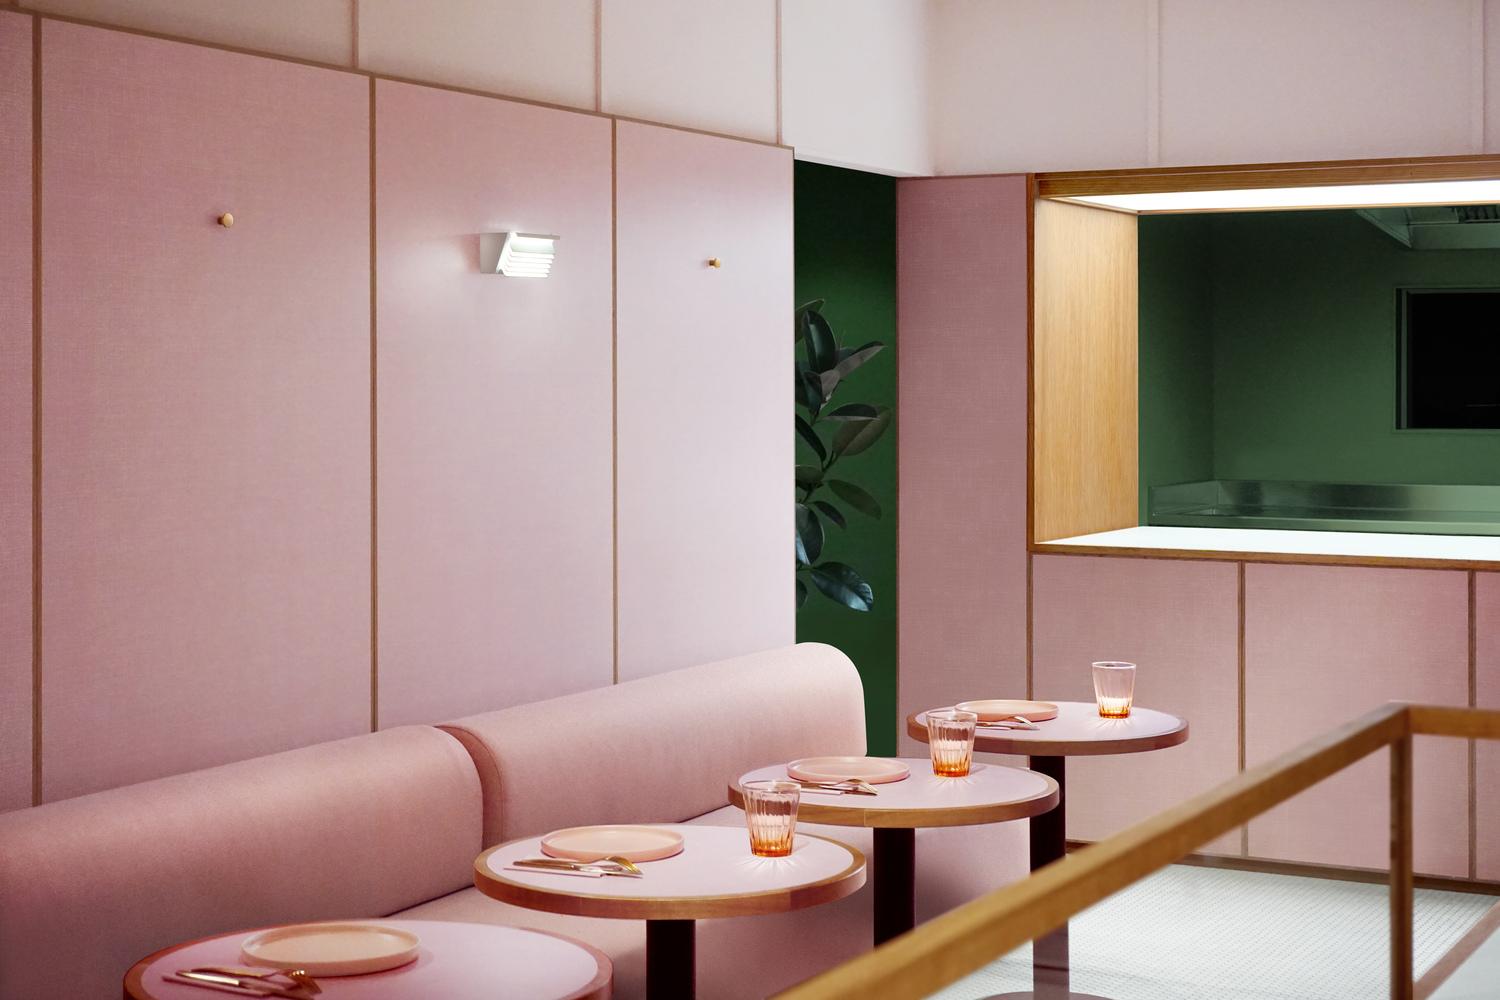 【倫敦必去粉色新餐廳】沿用電影建築風格 重塑50年代英國流行文化